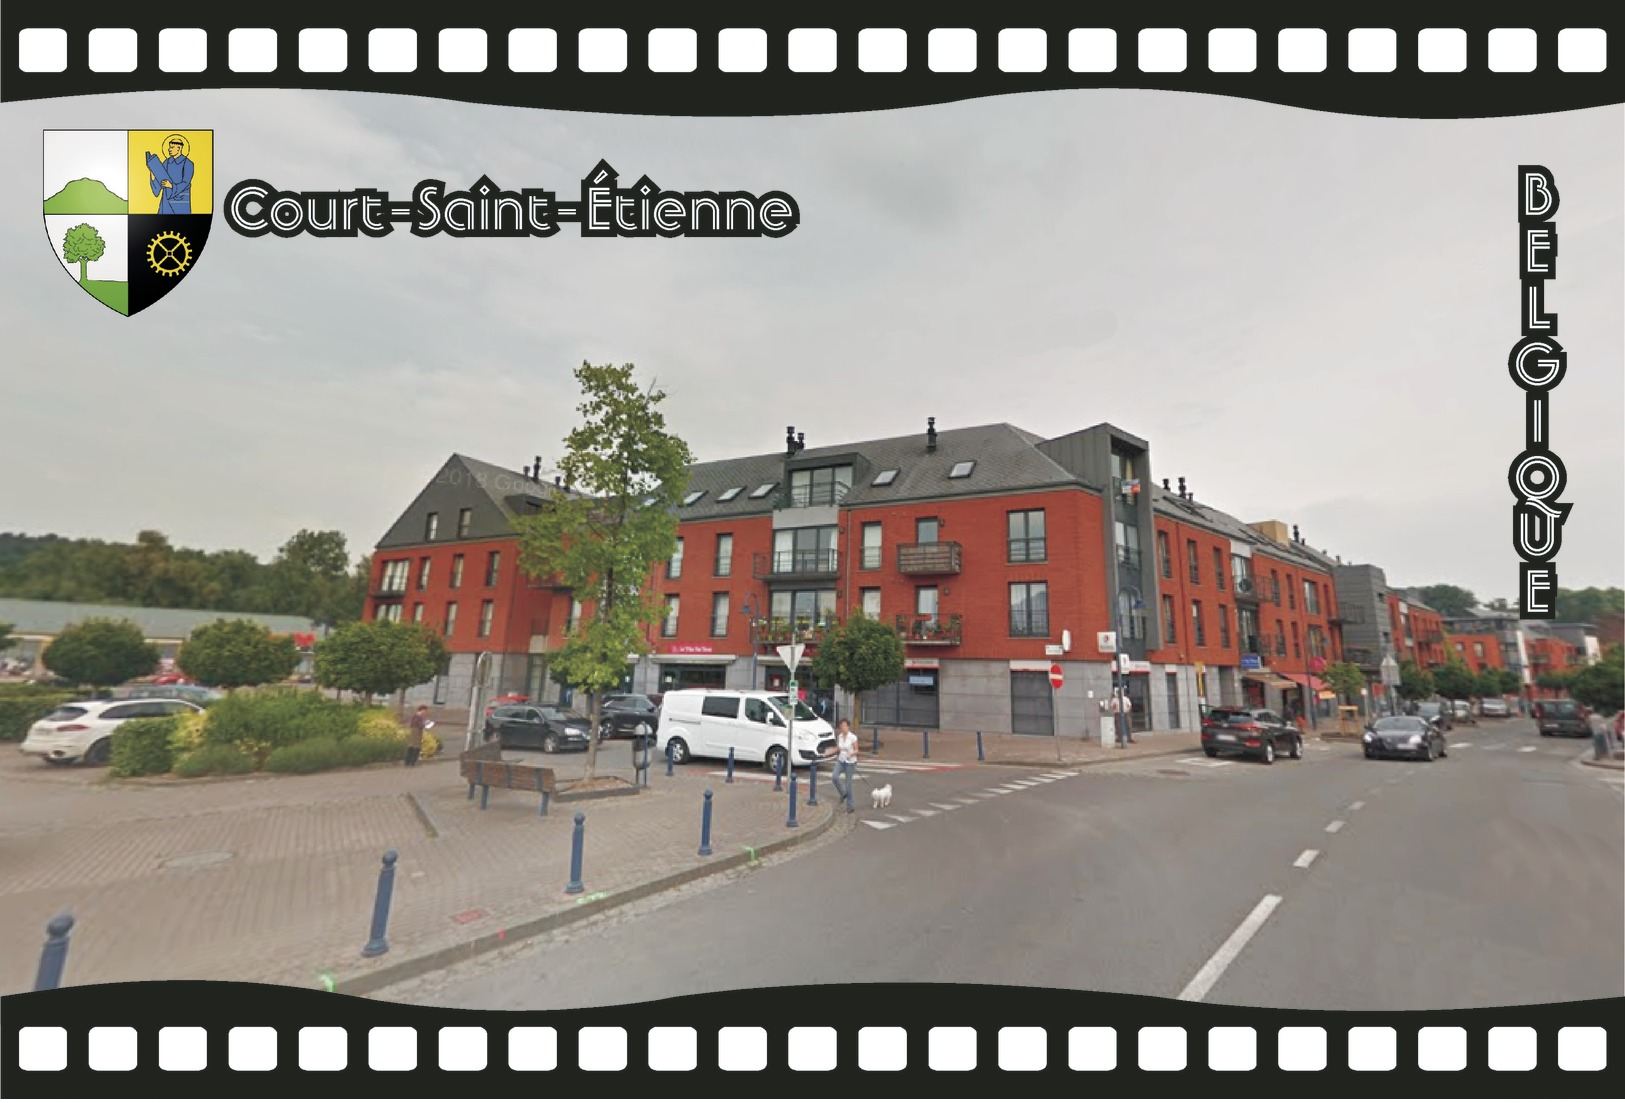 Postcard, REPRODUCTION, Municipalities Of Belgium, Streets Of Court-Saint-Étienne 28 - Cartes Géographiques